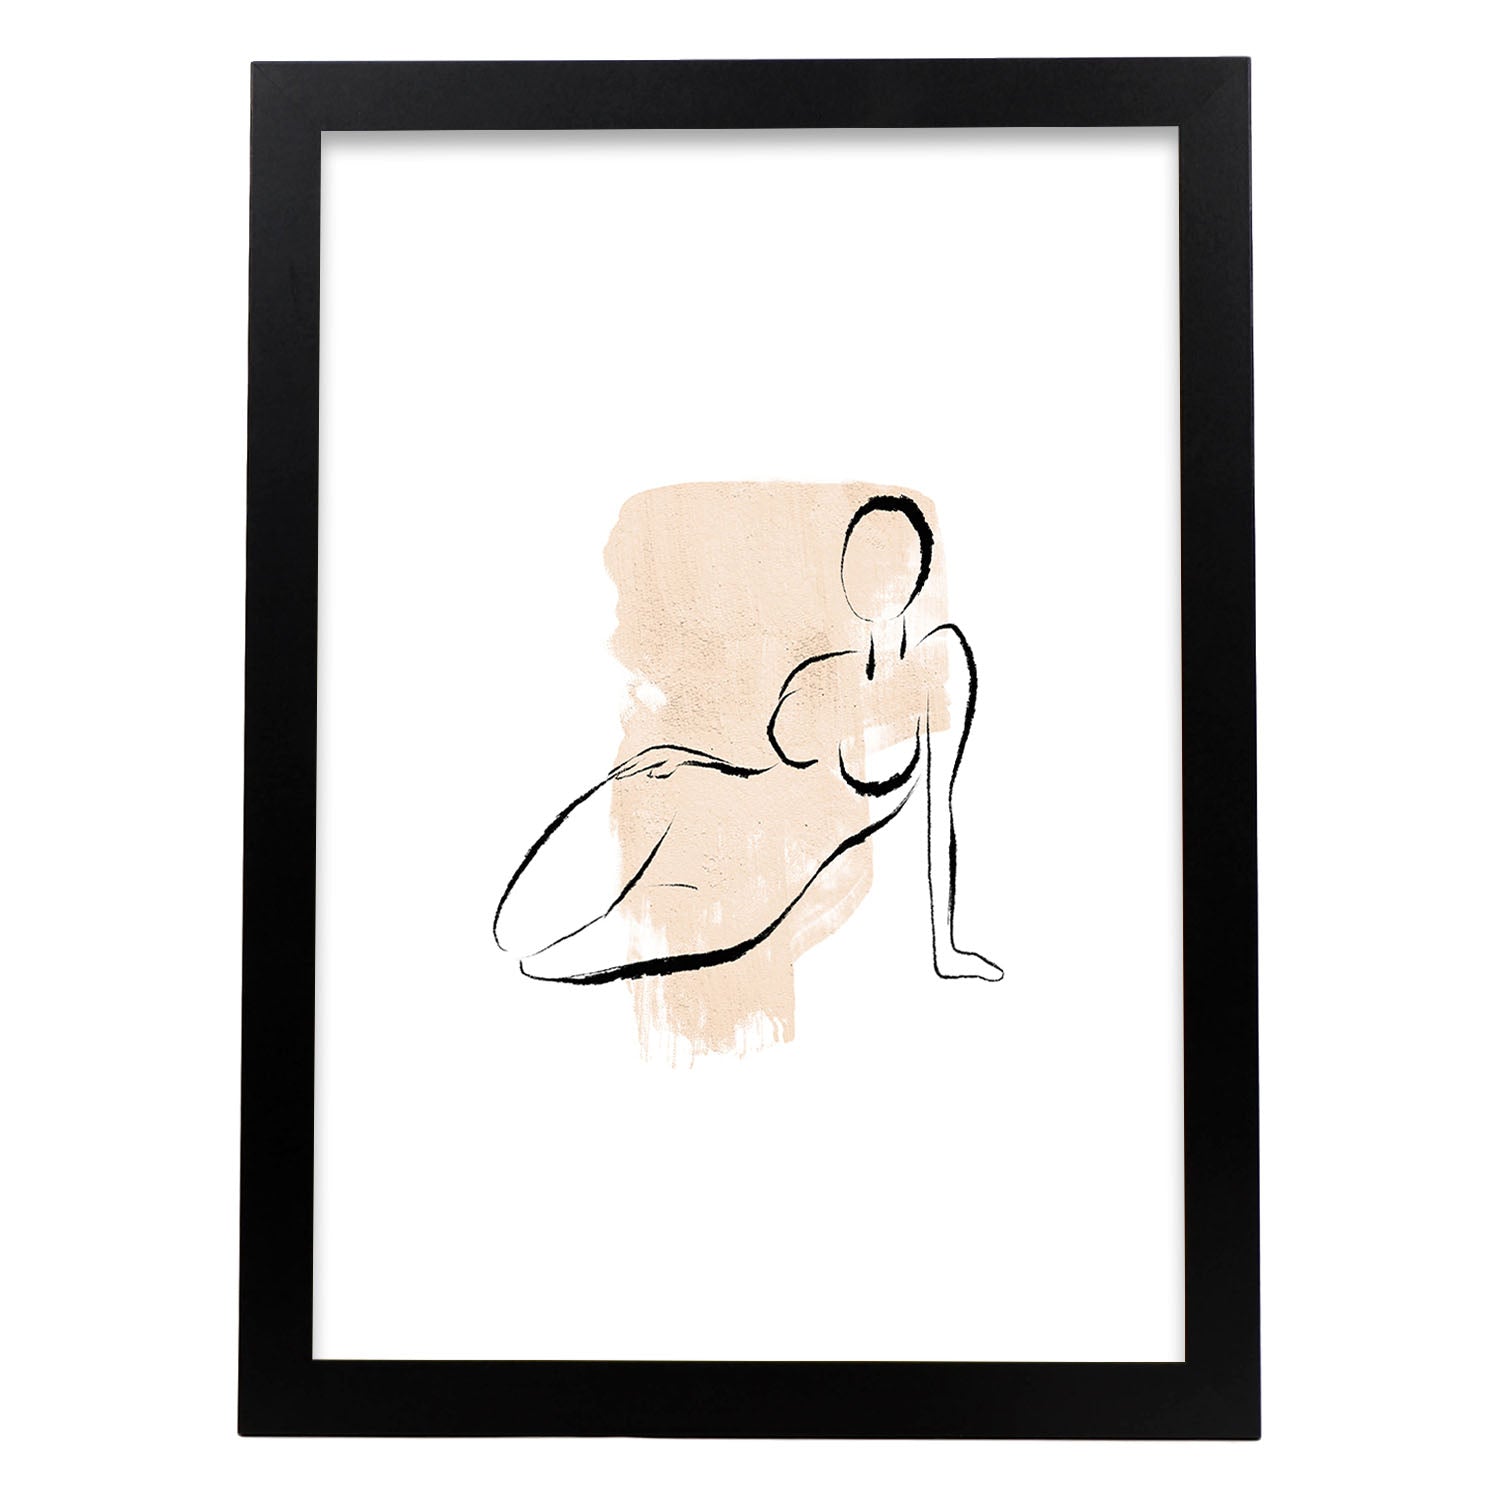 Poster con ilustracion de mujer. Dibujos con formas, caras, cuerpos y gestos de mujeres. 'Mujeres 14'.-Artwork-Nacnic-A3-Marco Negro-Nacnic Estudio SL